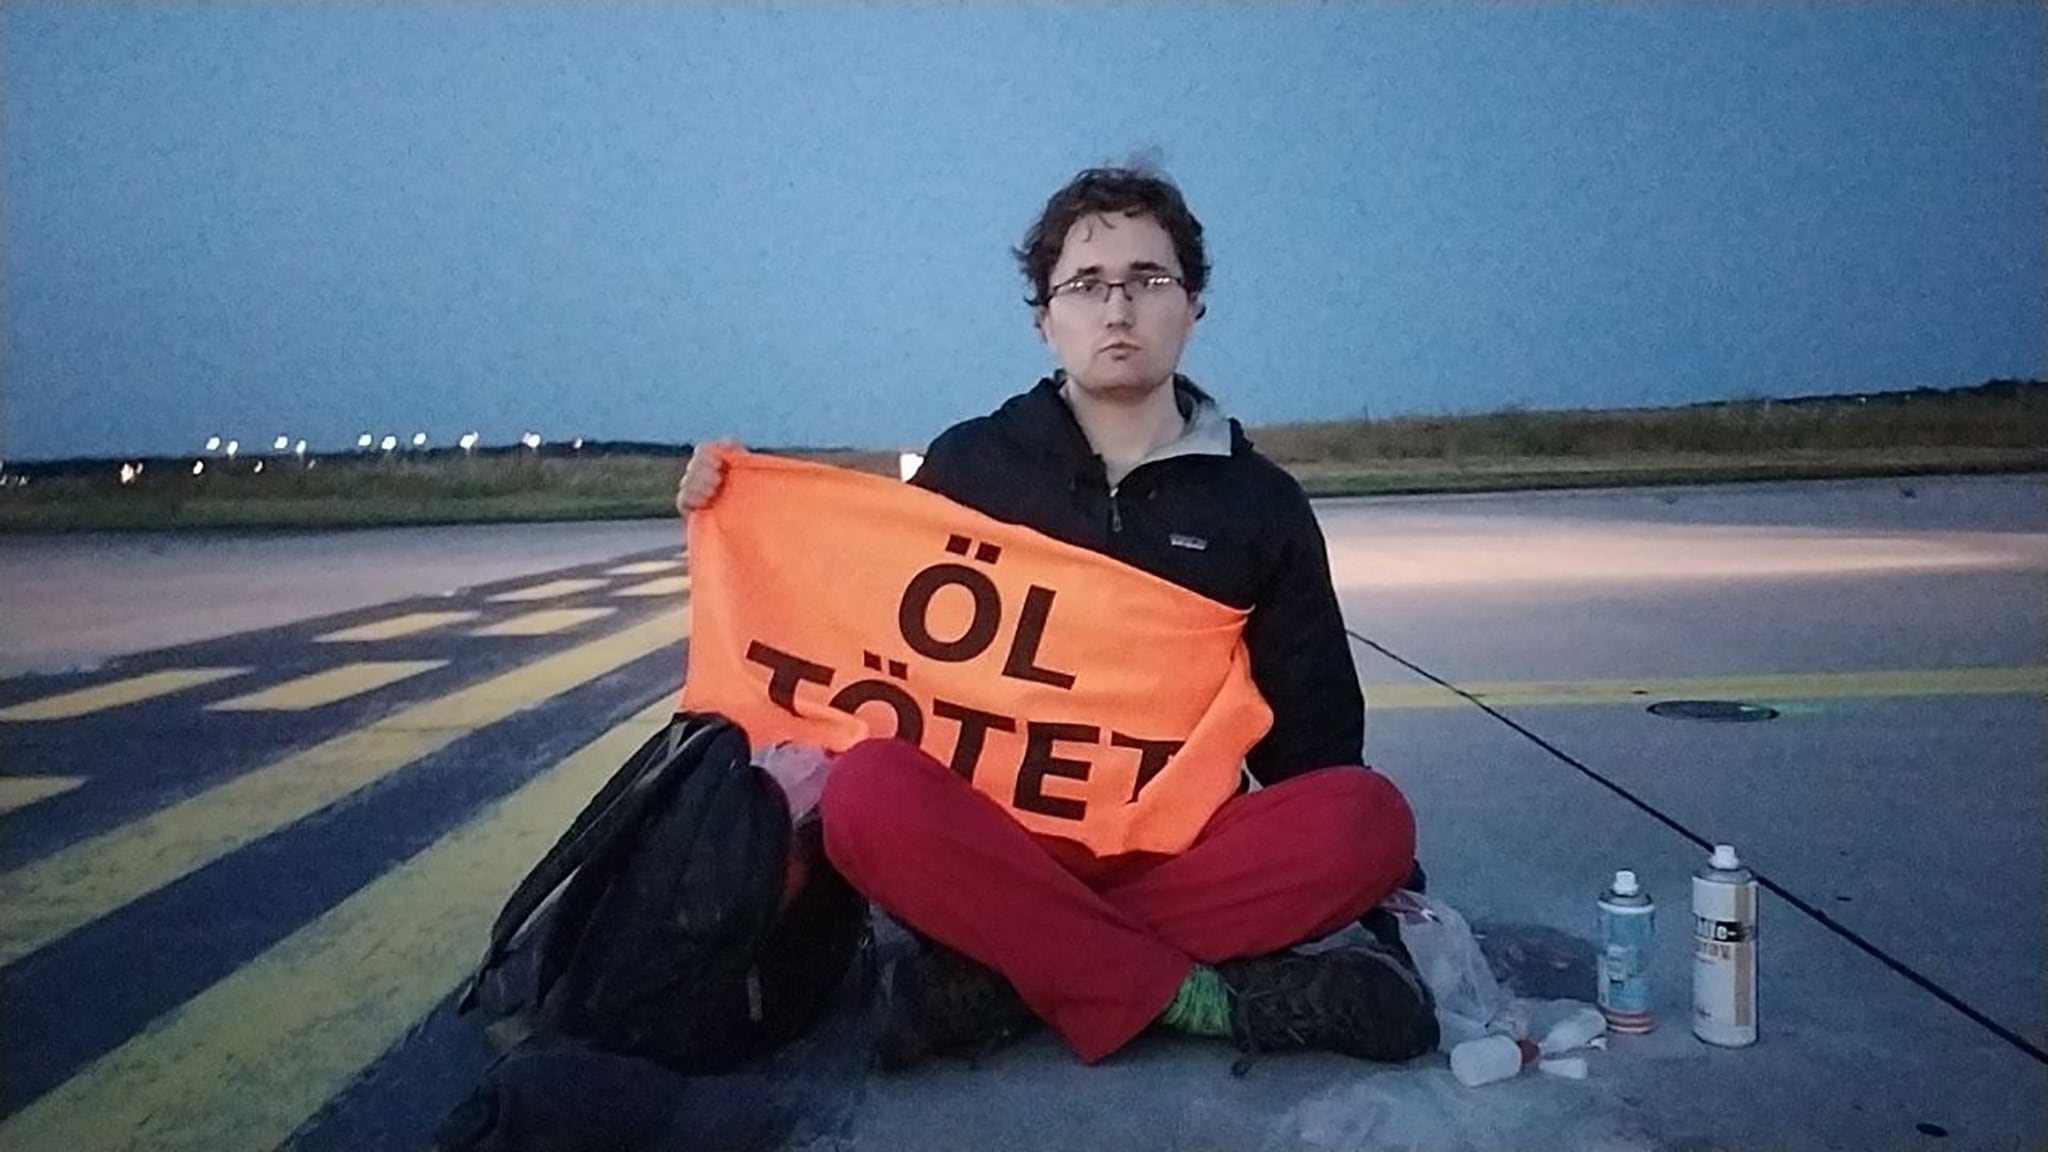 El aeropuerto de Fráncfort reabre tras haber suspendido vuelos por una protesta climática